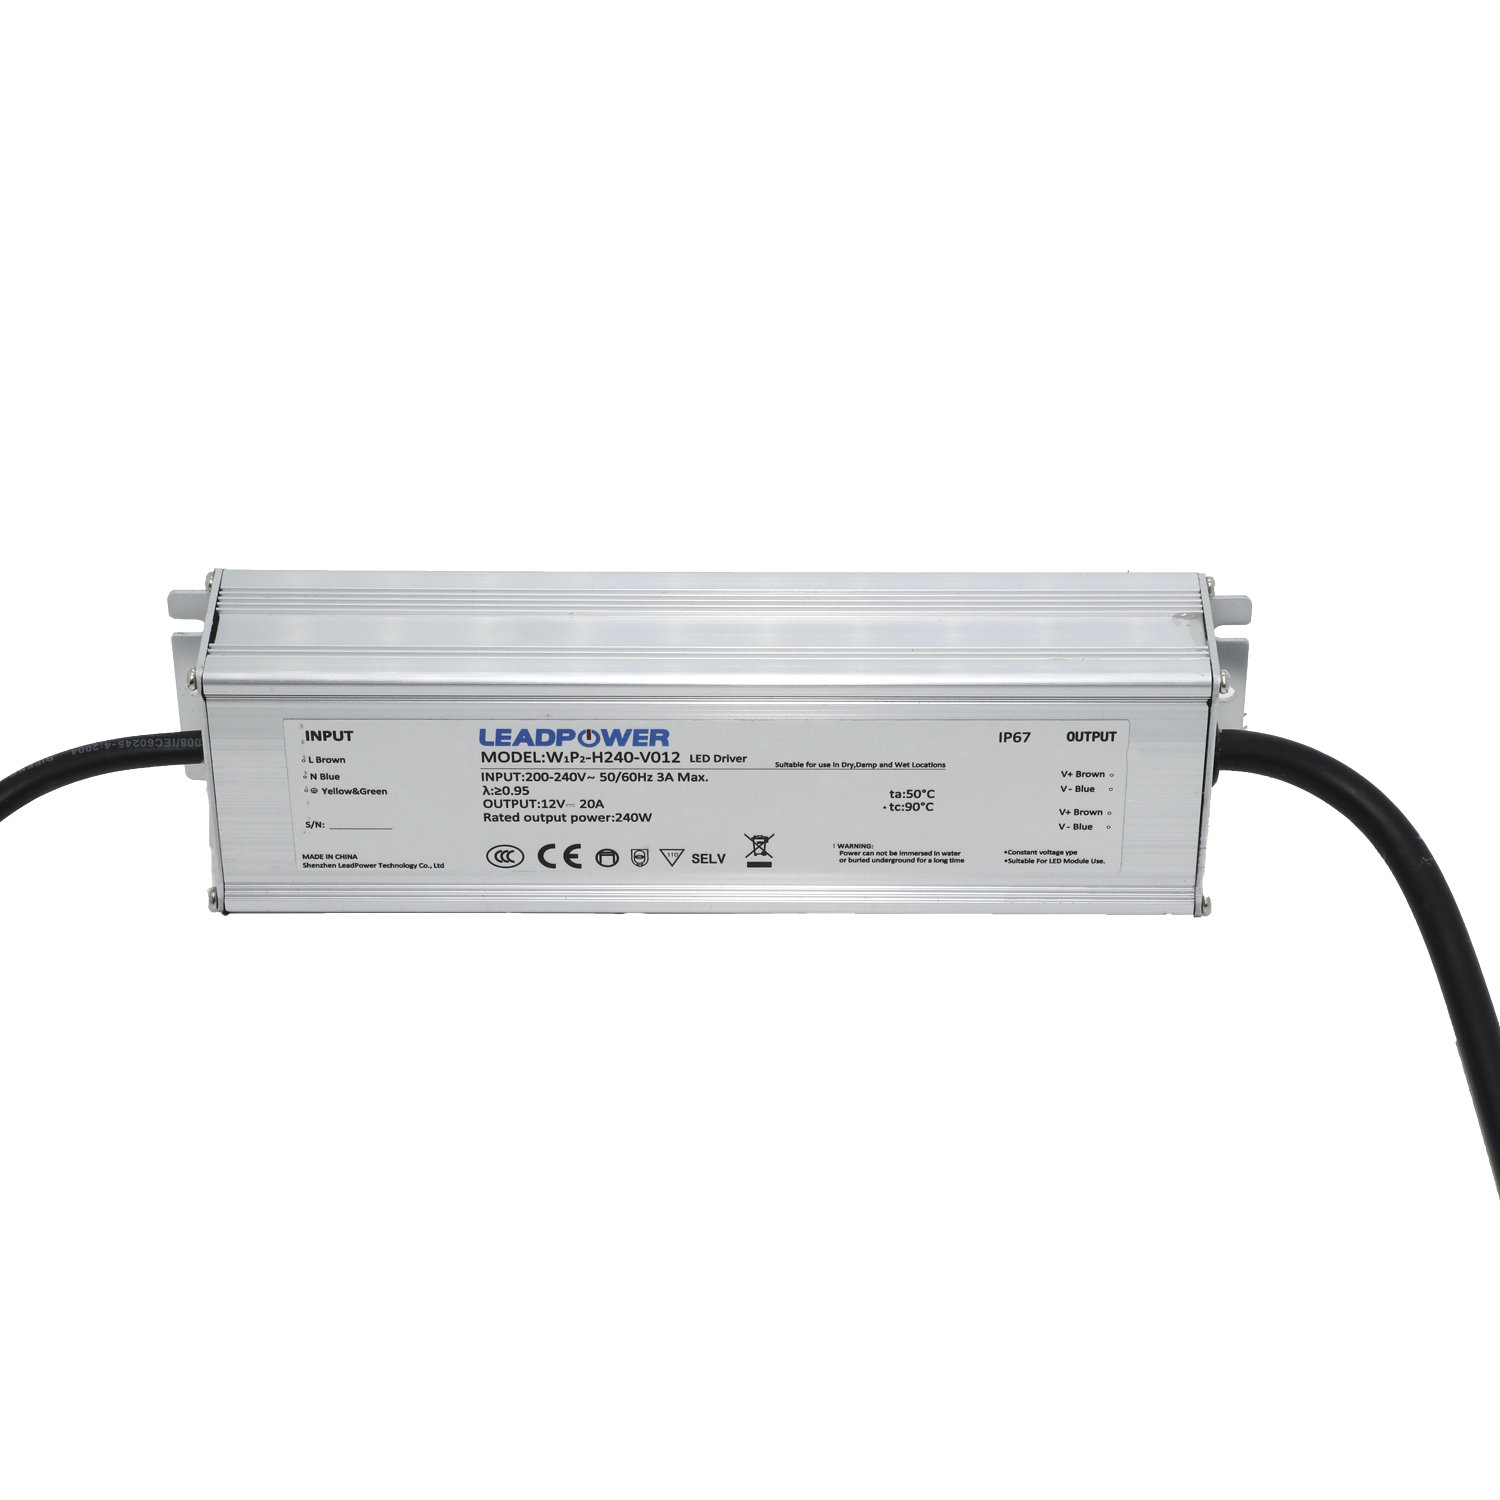 WBP-H240 Series Waterproof LED Power Supply 